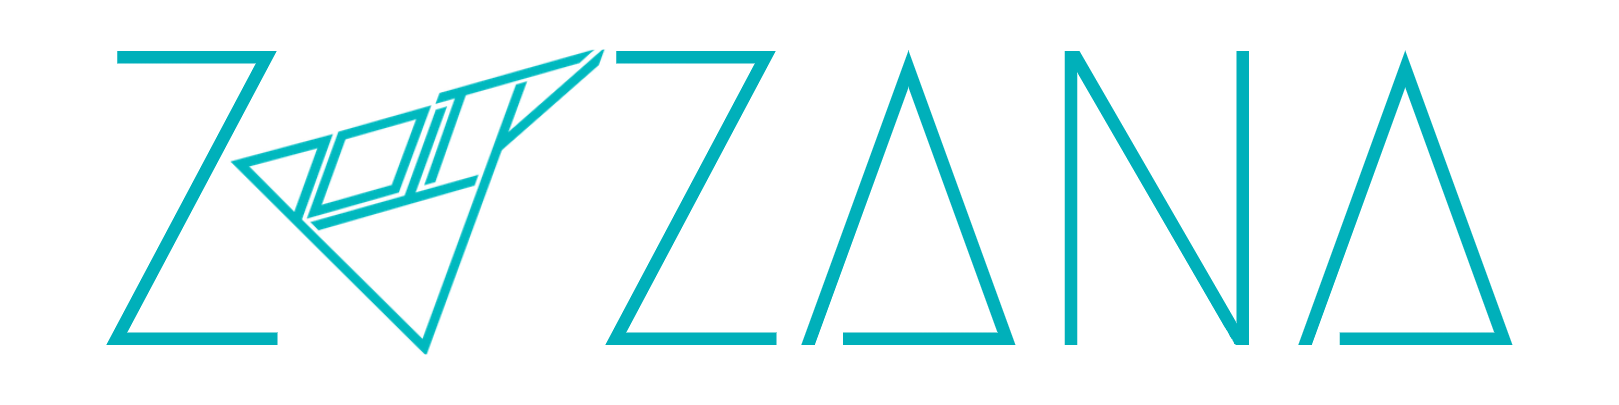 logo_Zuzana